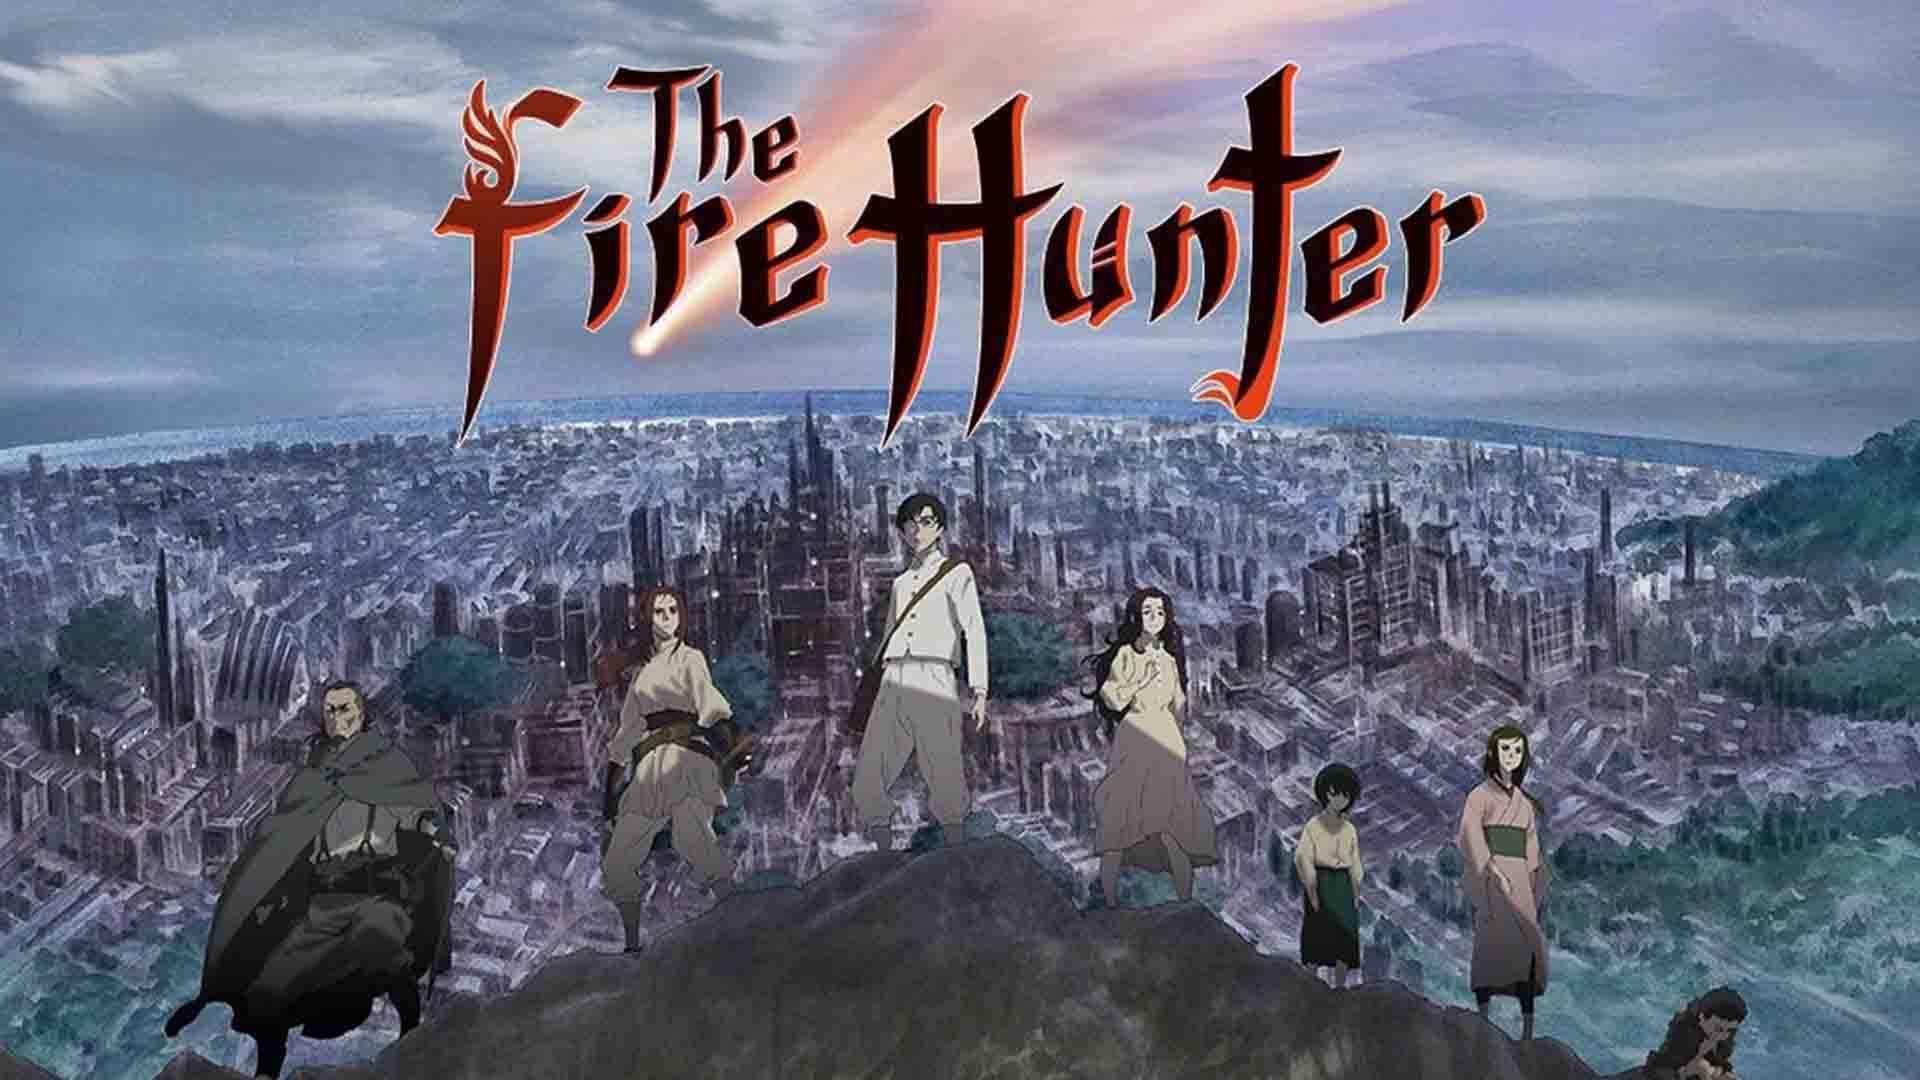 Les personnages principaux de la série animée The Fire Hunter